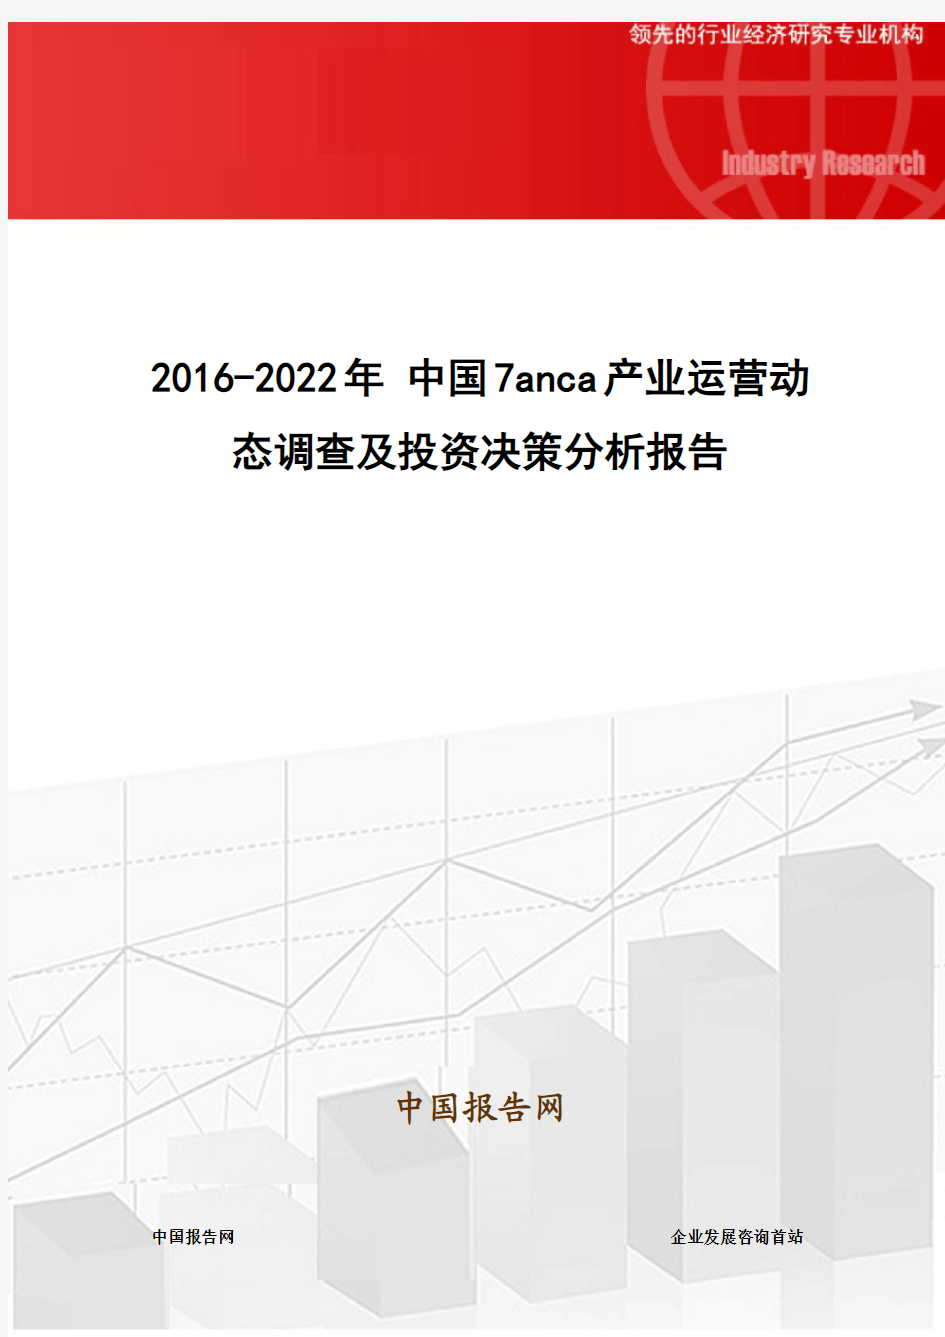 2016-2022年 中国7anca产业运营动态调查及投资决策分析报告